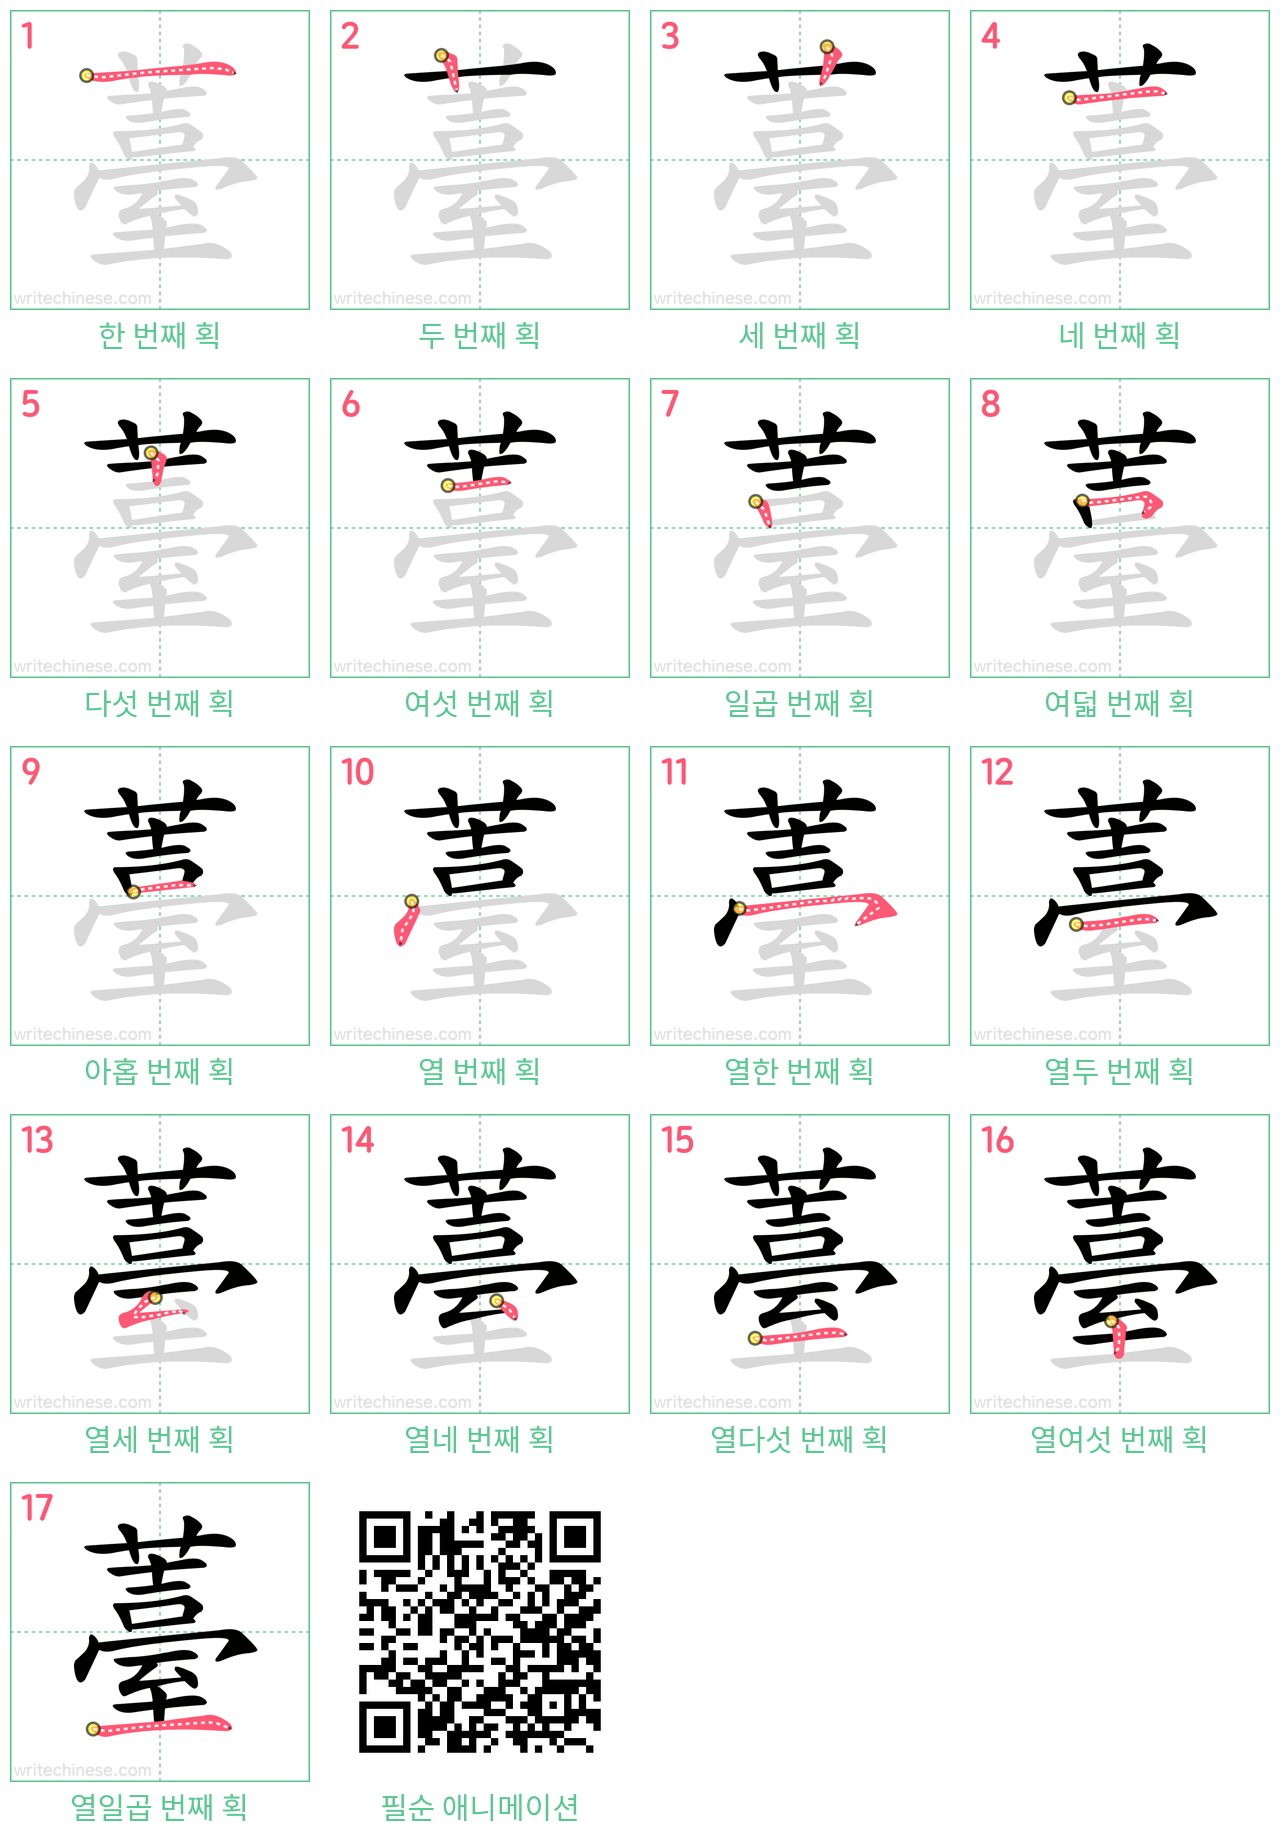 薹 step-by-step stroke order diagrams